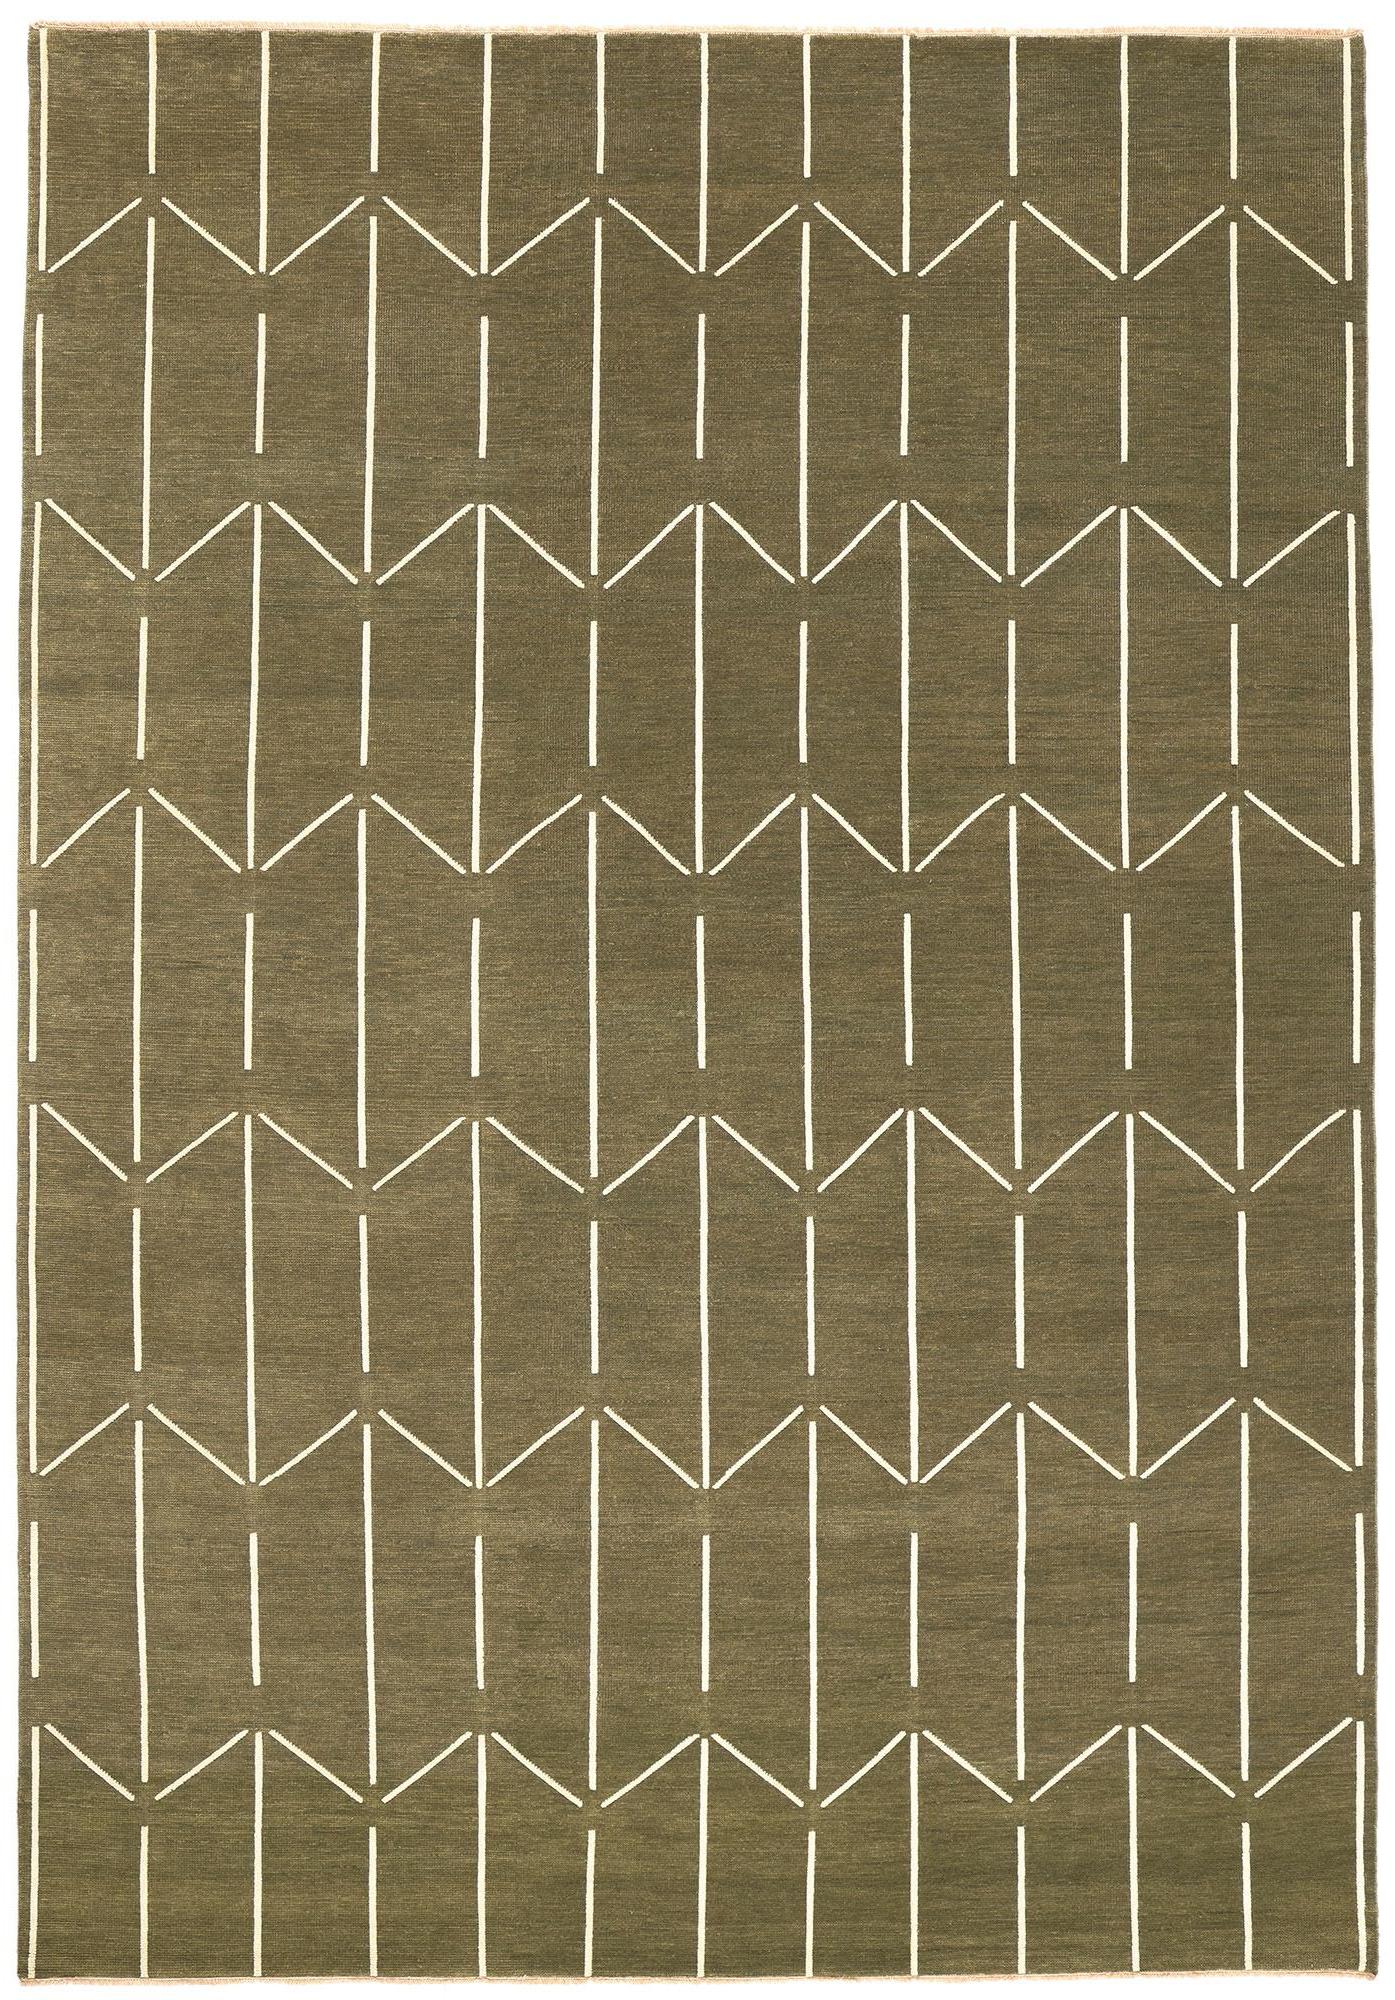 Geometrischer Hochlehner Teppich, skandinavisch-moderner Teppich der Moderne auf japanischem Zen